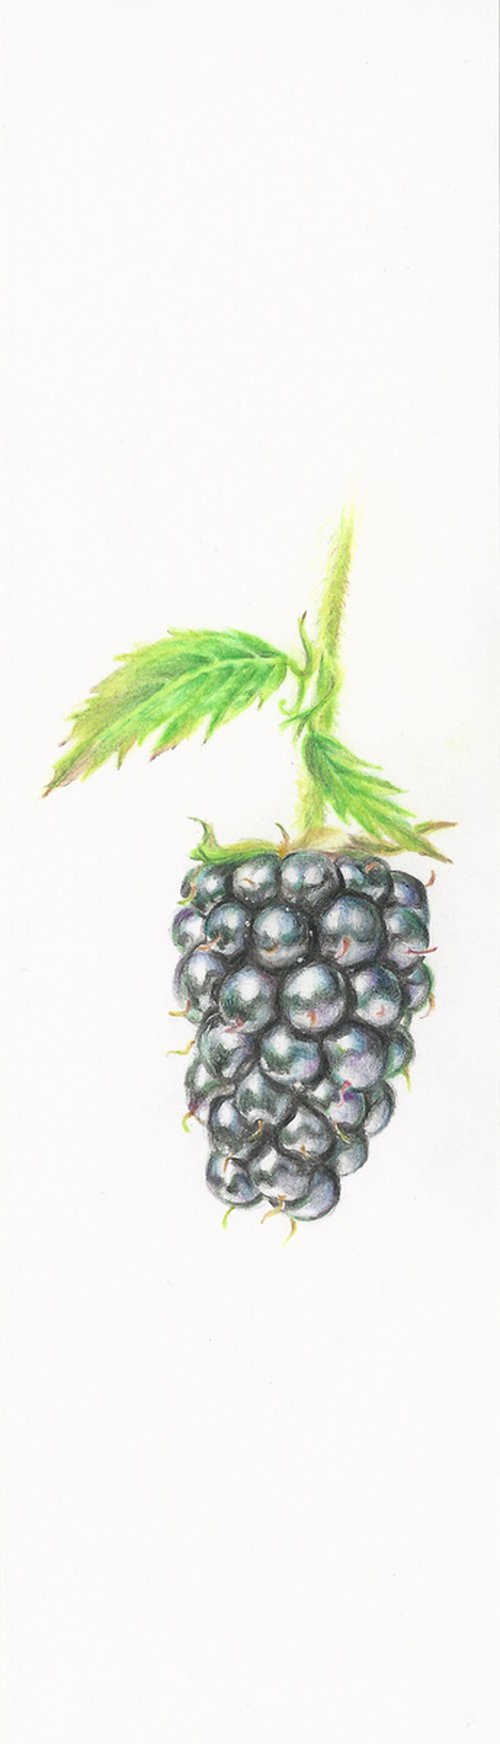 My Wild Berries as Bookmarks - The Blue Raspberry by Katya Santoro